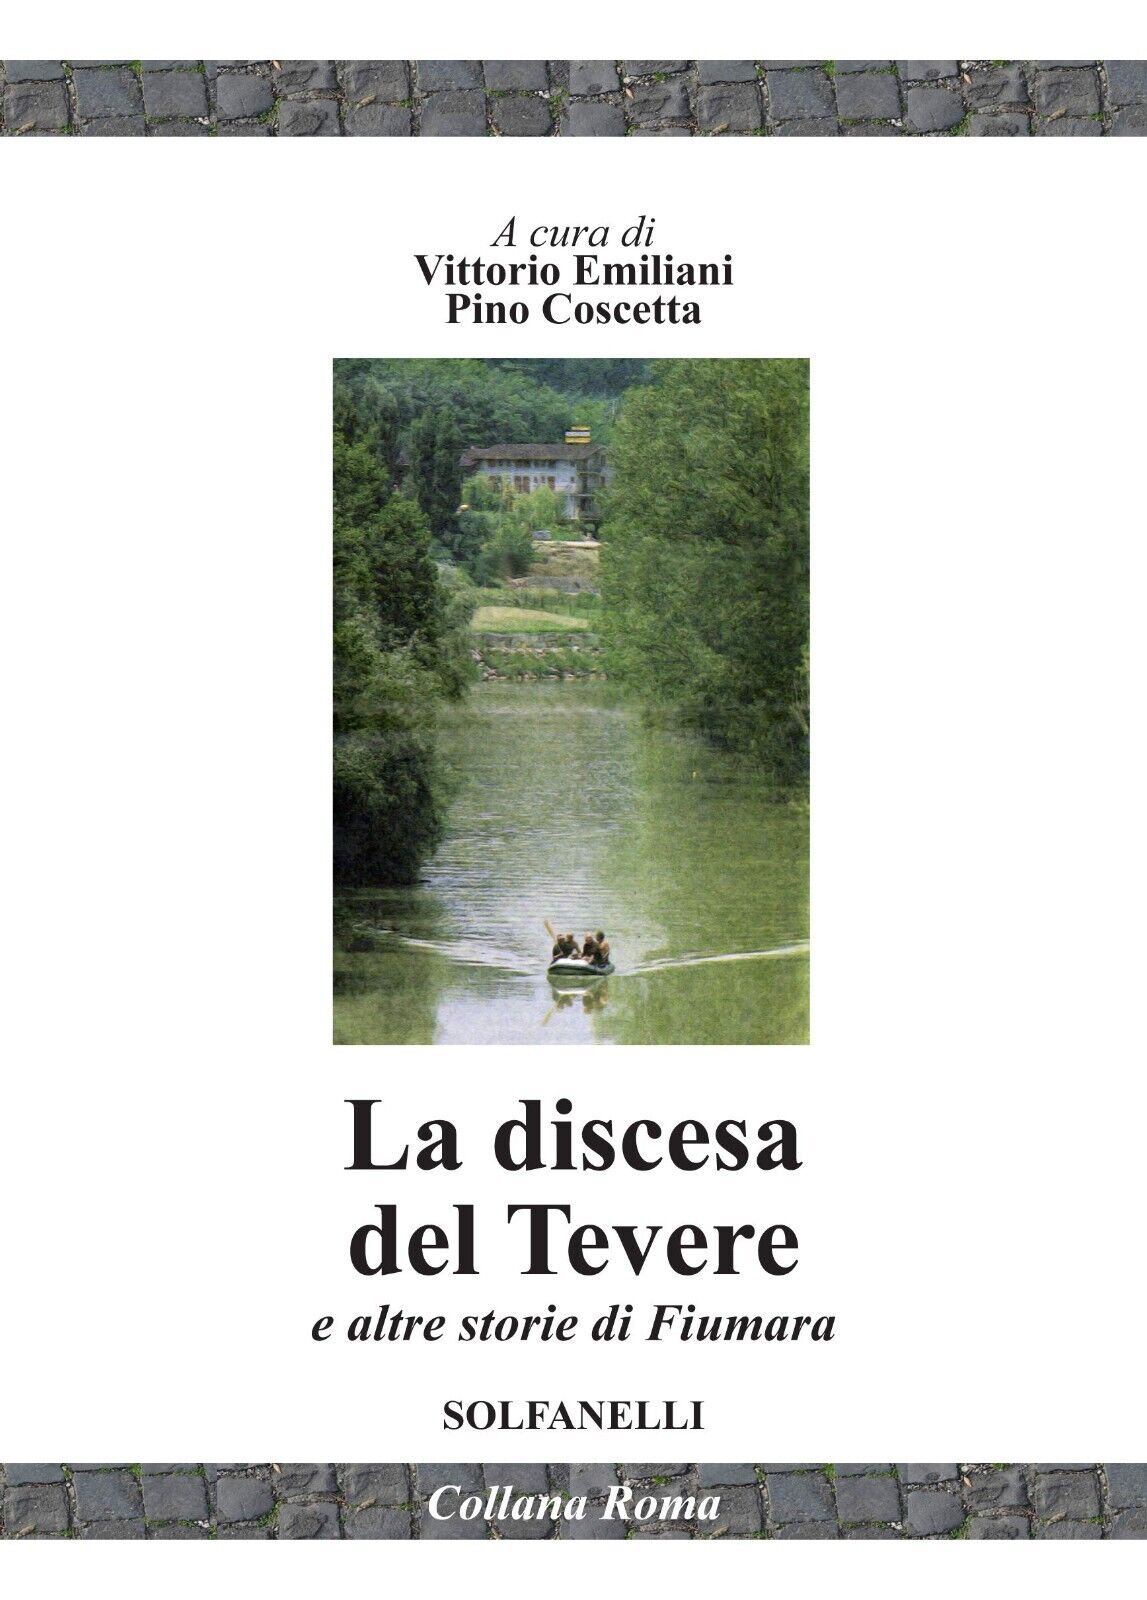 La discesa del Tevere e altre storie di fiumara di Vittorio Emiliani, Pino Cosc